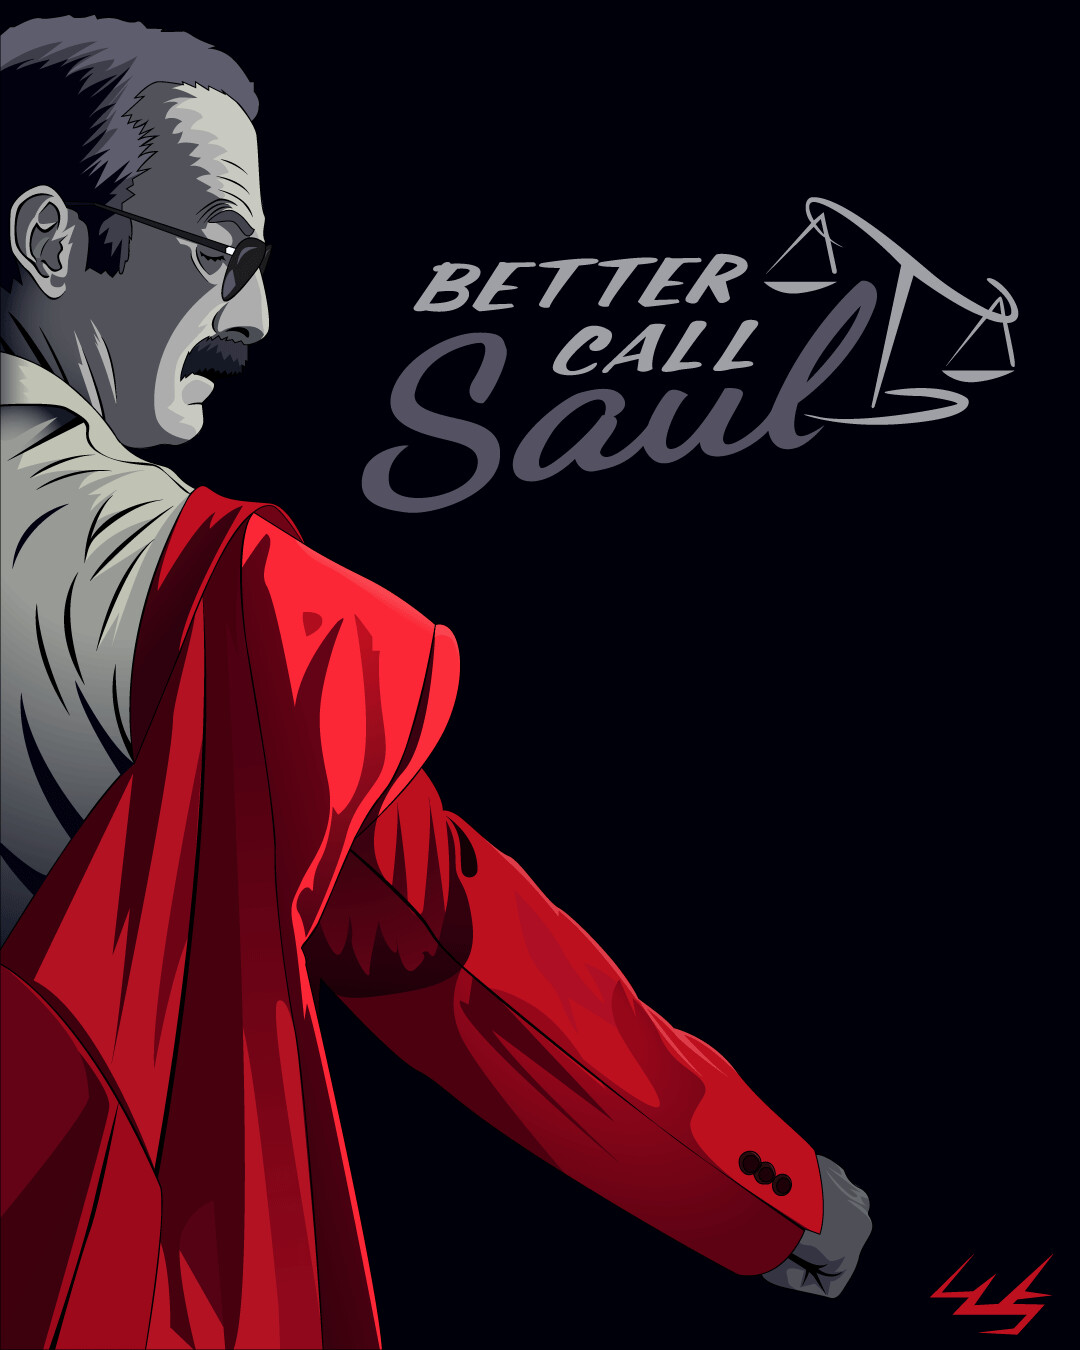 ArtStation - Better Call Saul Poster